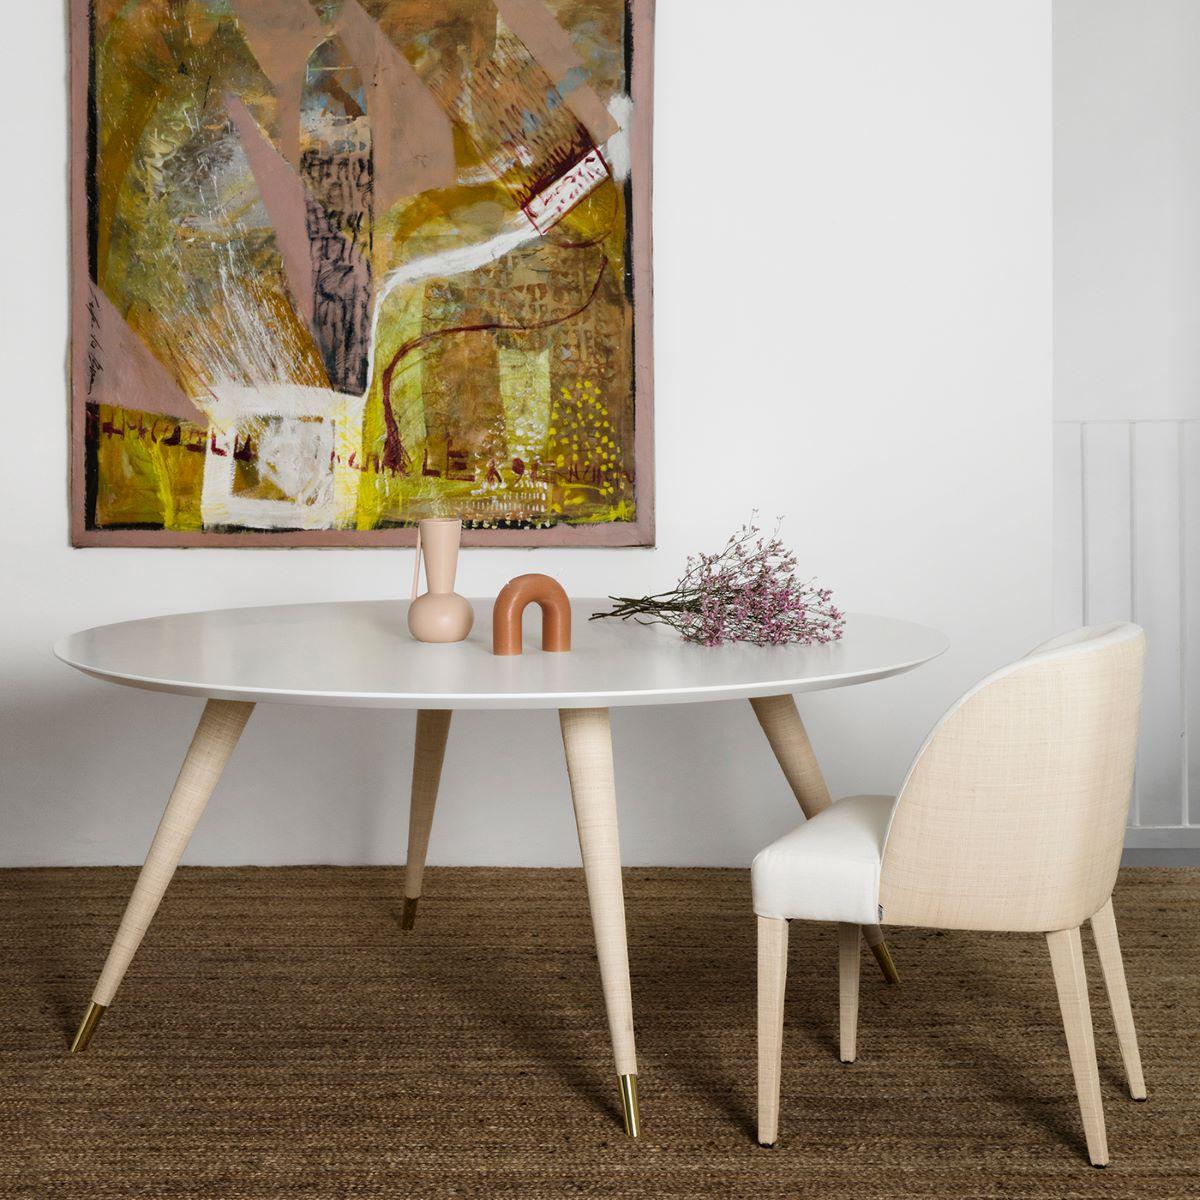 Cette chaise de salle à manger, au design épuré, complète élégamment la table à manger Cupertino. Elle est dotée d'un revêtement distinctif qui associe tissu blanc et raphia.